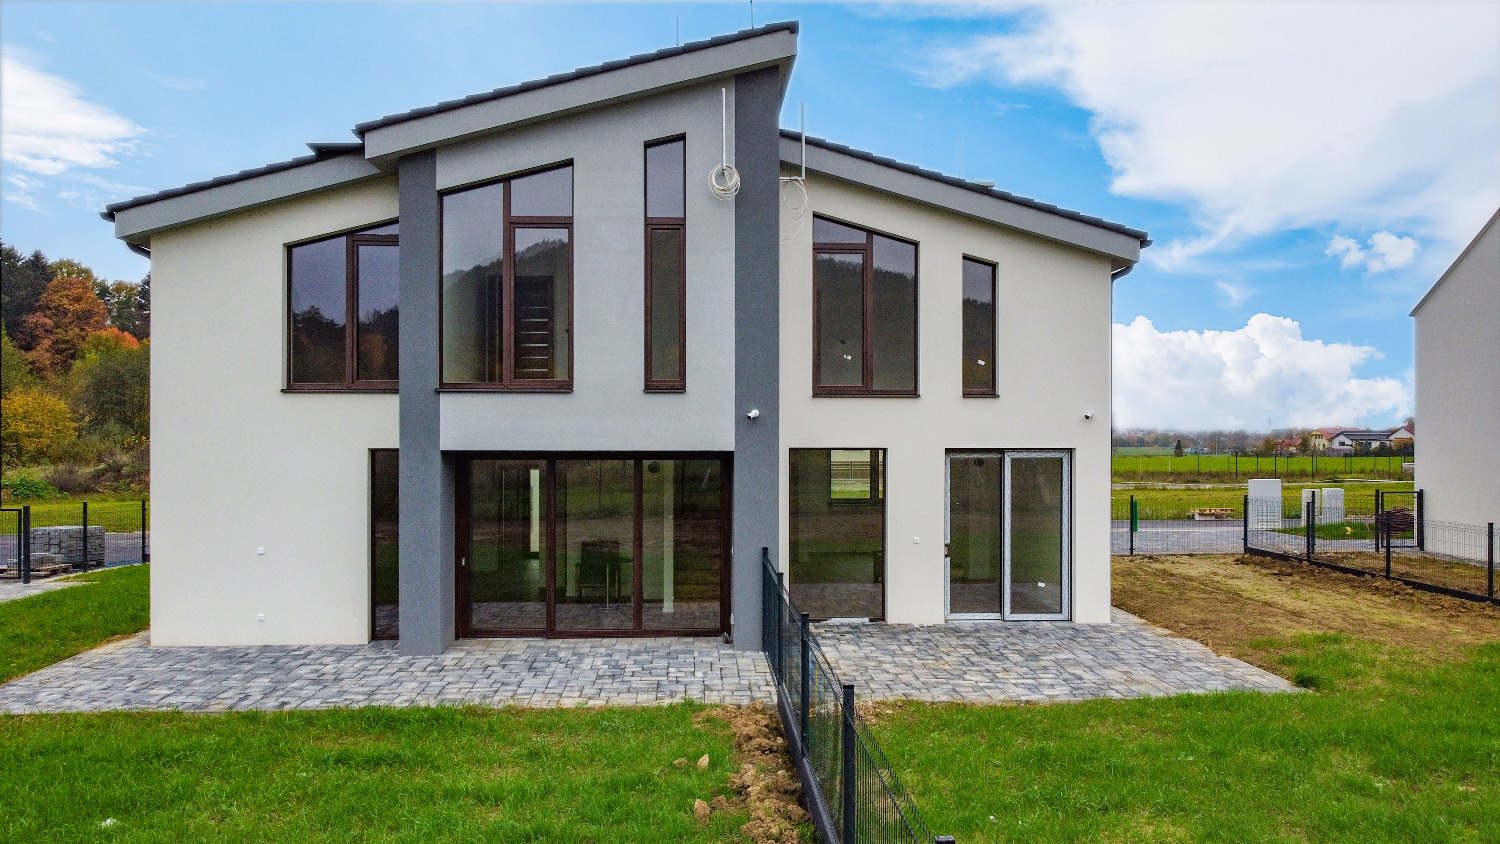 Presvetlený 4-izbový rodinný dom, dvojdom, krásne prostredie, predaj, Púchov - Beluša, Cena: 238.000,- €.